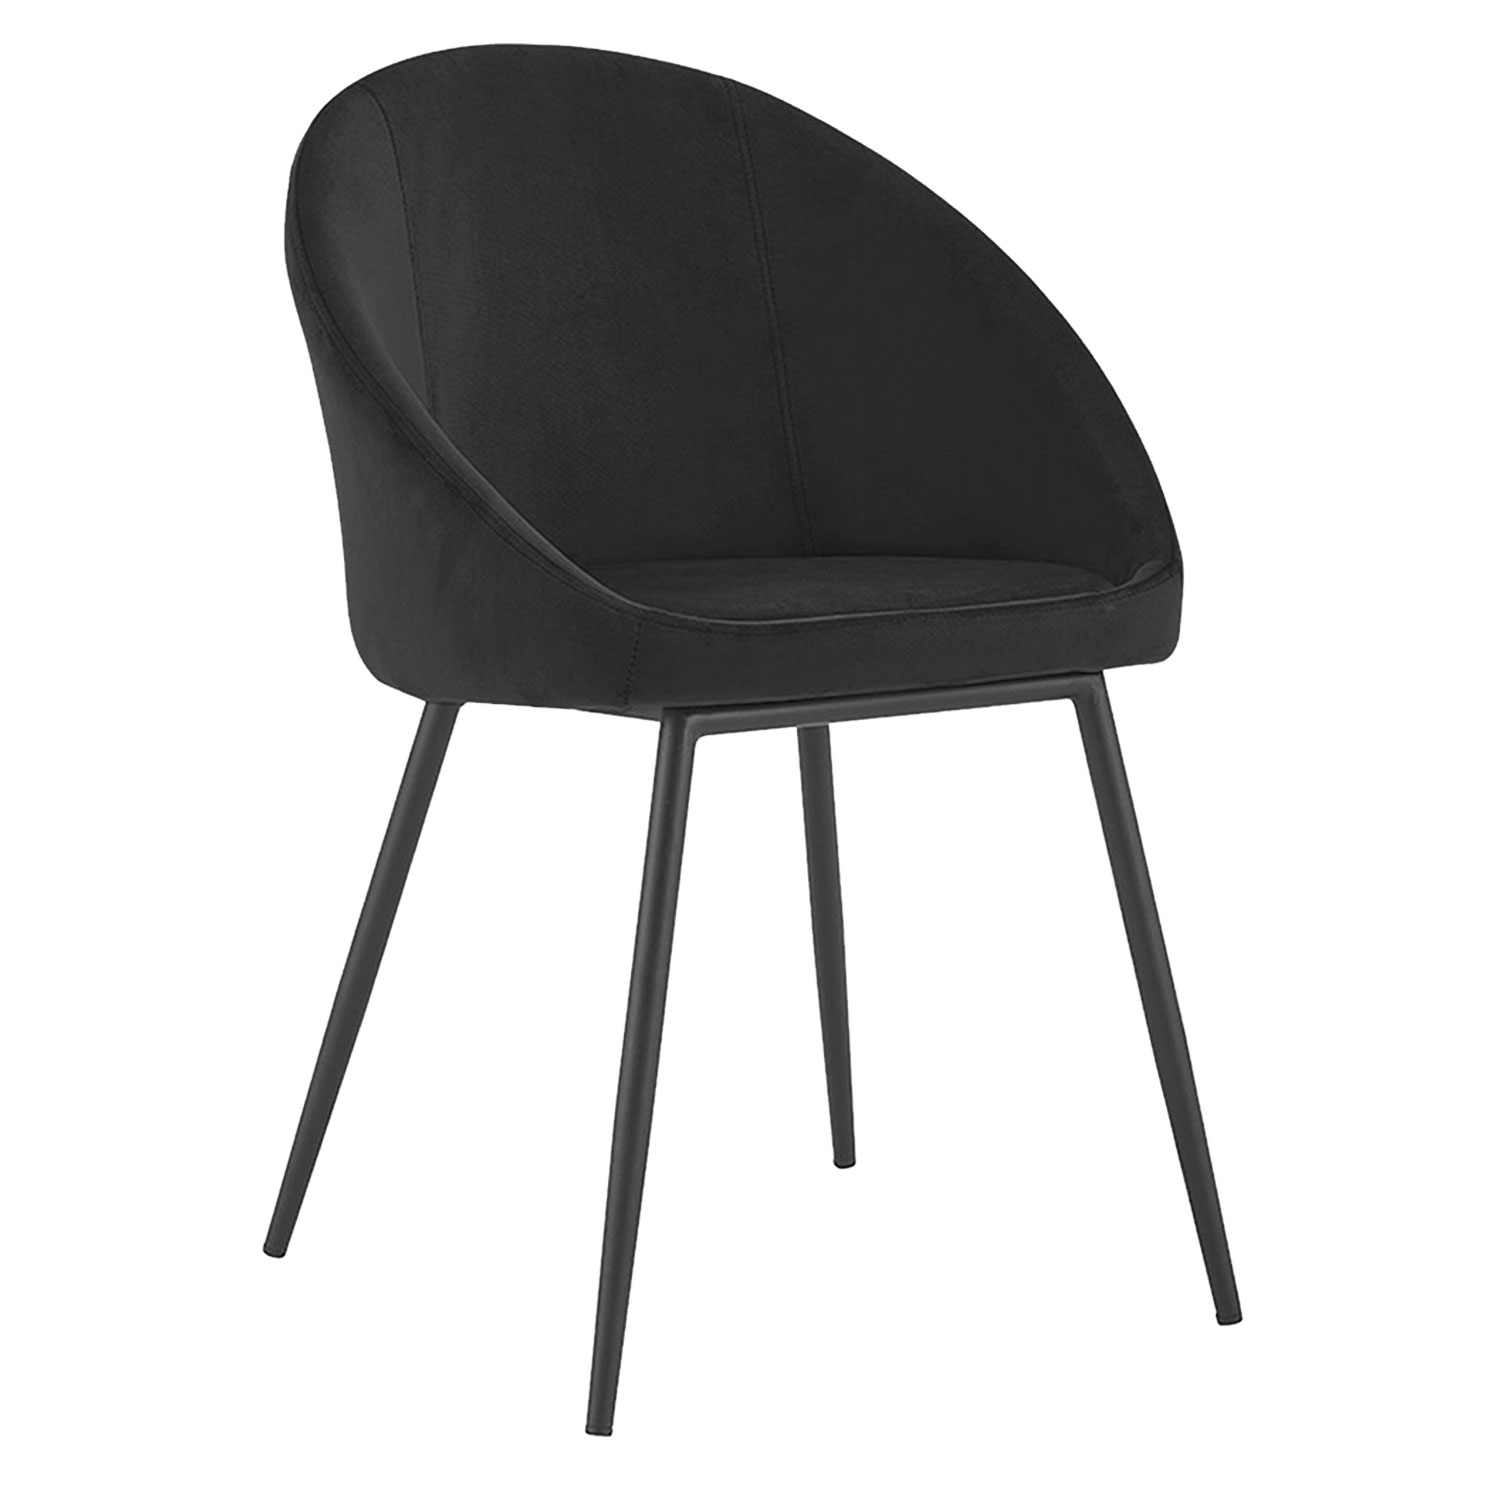 Set van 2 vintage DIANE zwart fluwelen stoelen